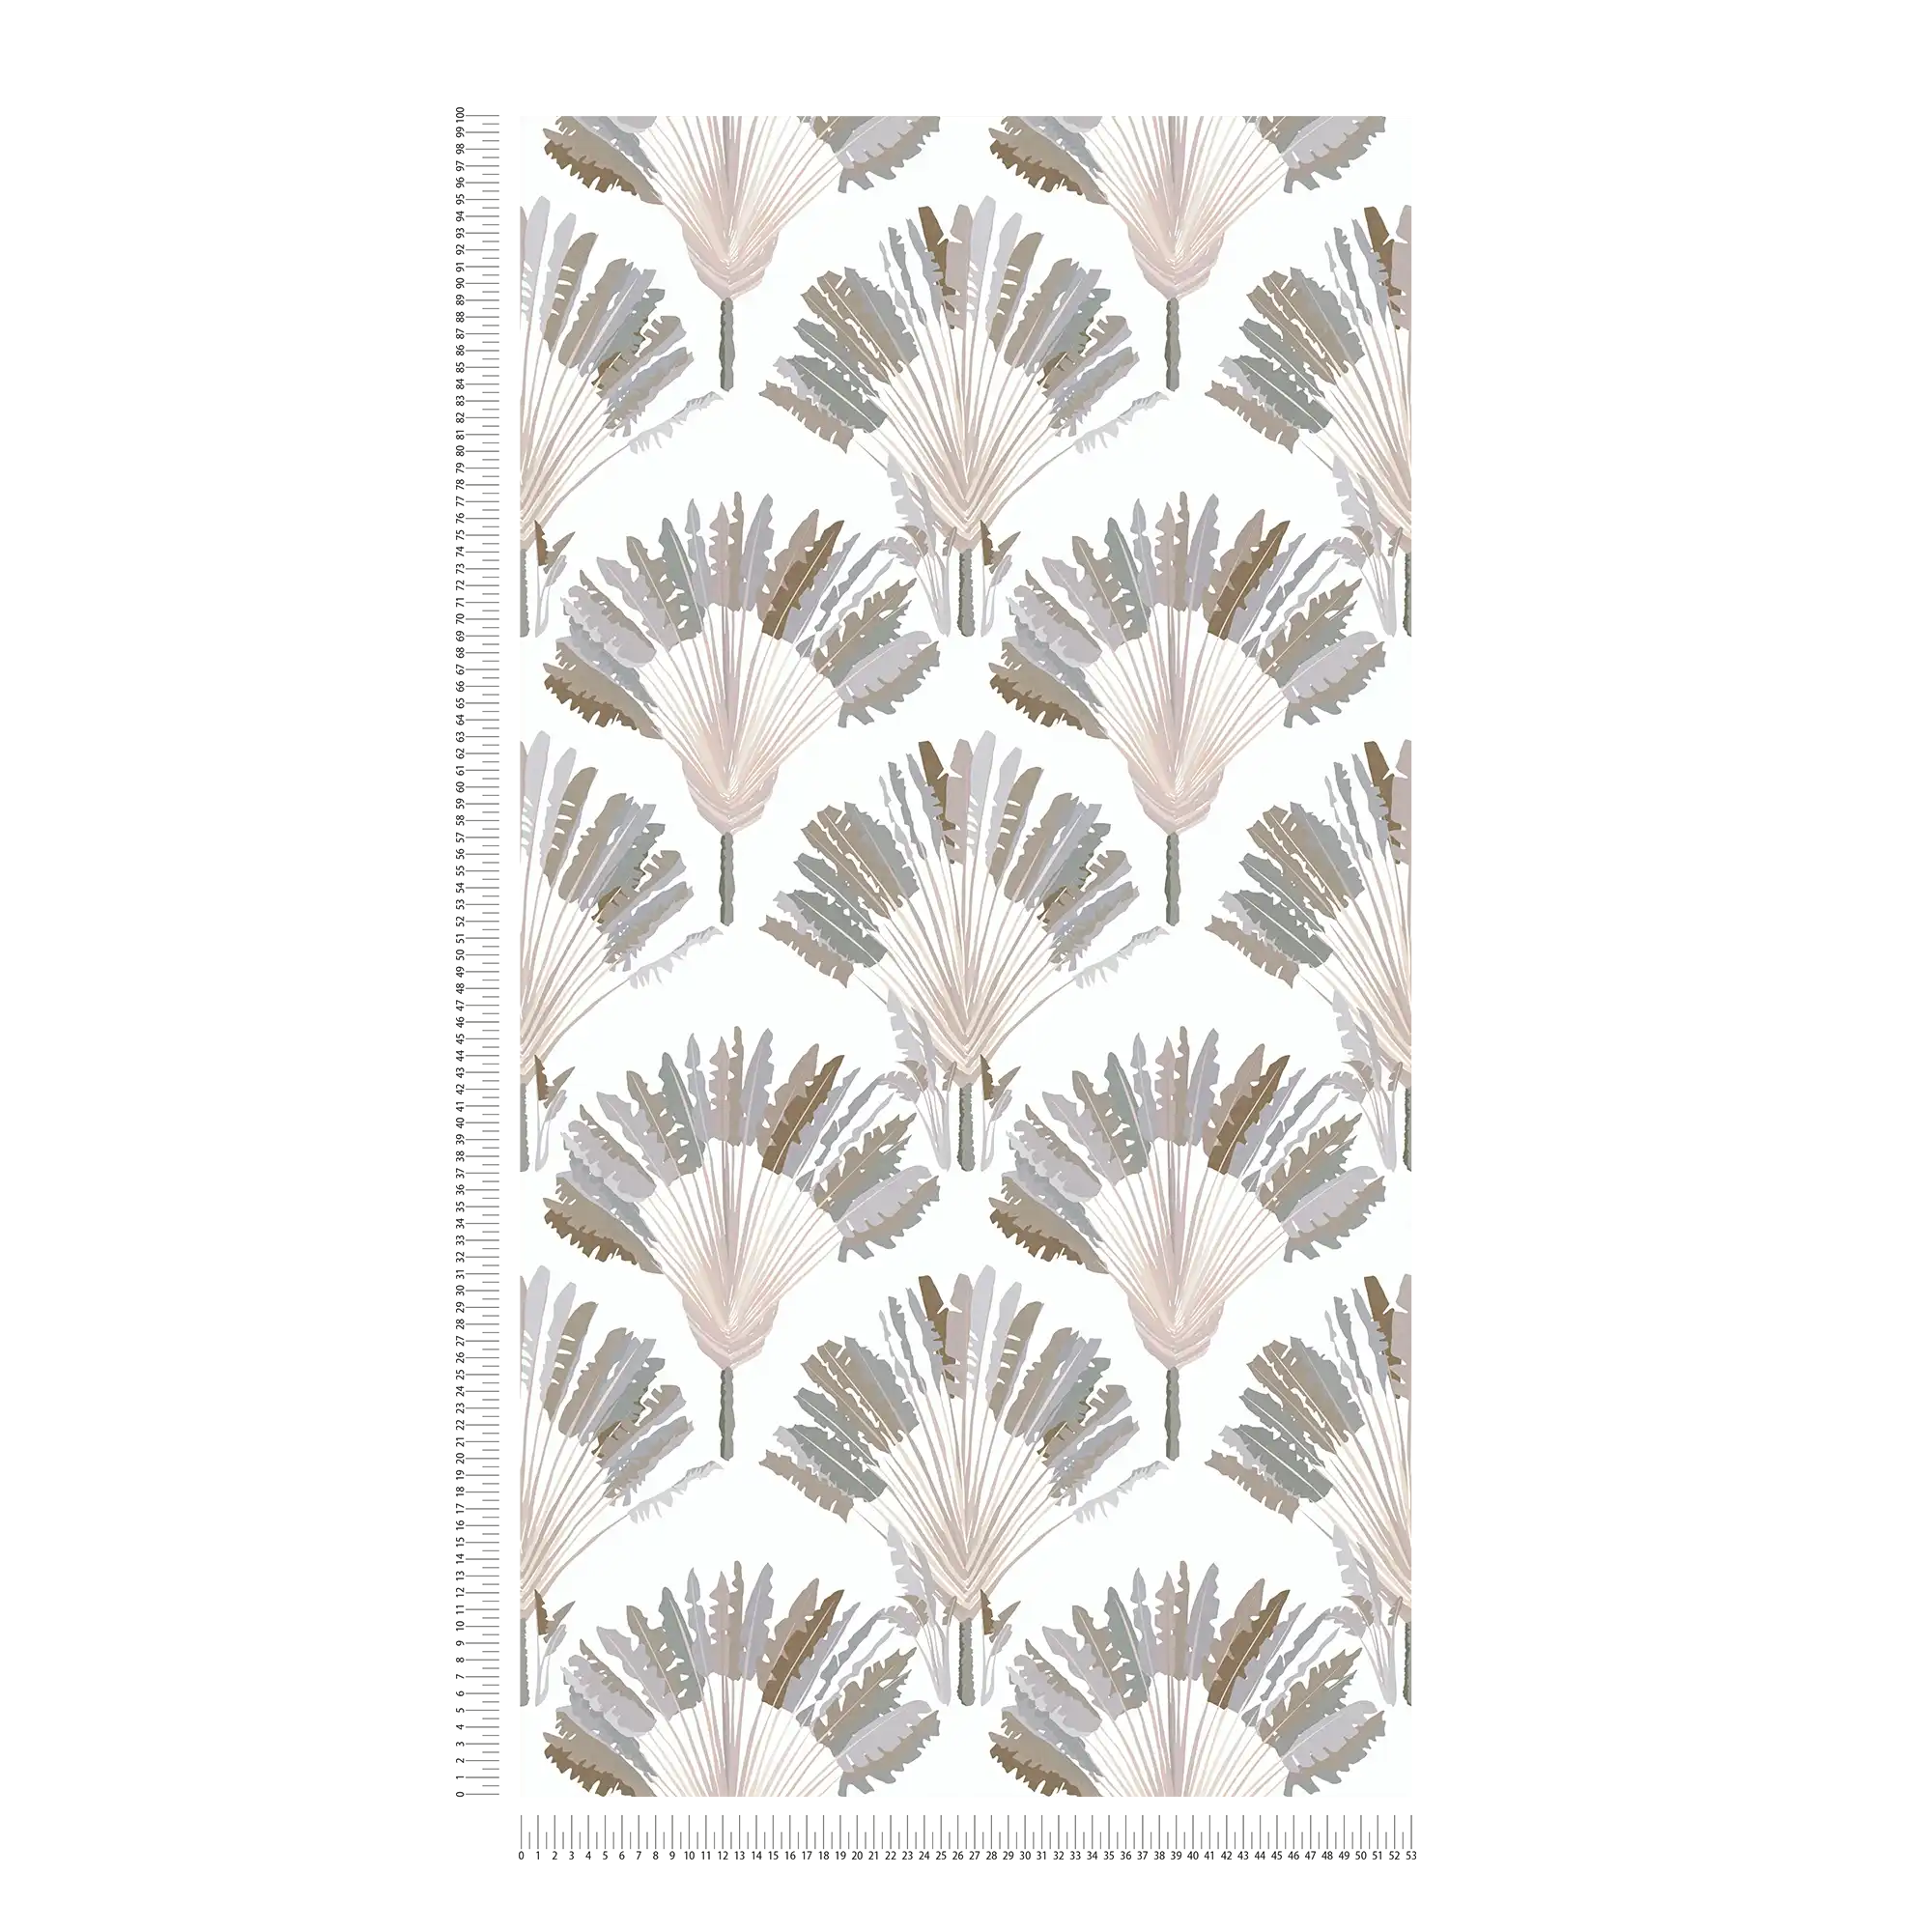             Papel pintado gris-beige con diseño de palmeras y bloques - gris, blanco, marrón
        